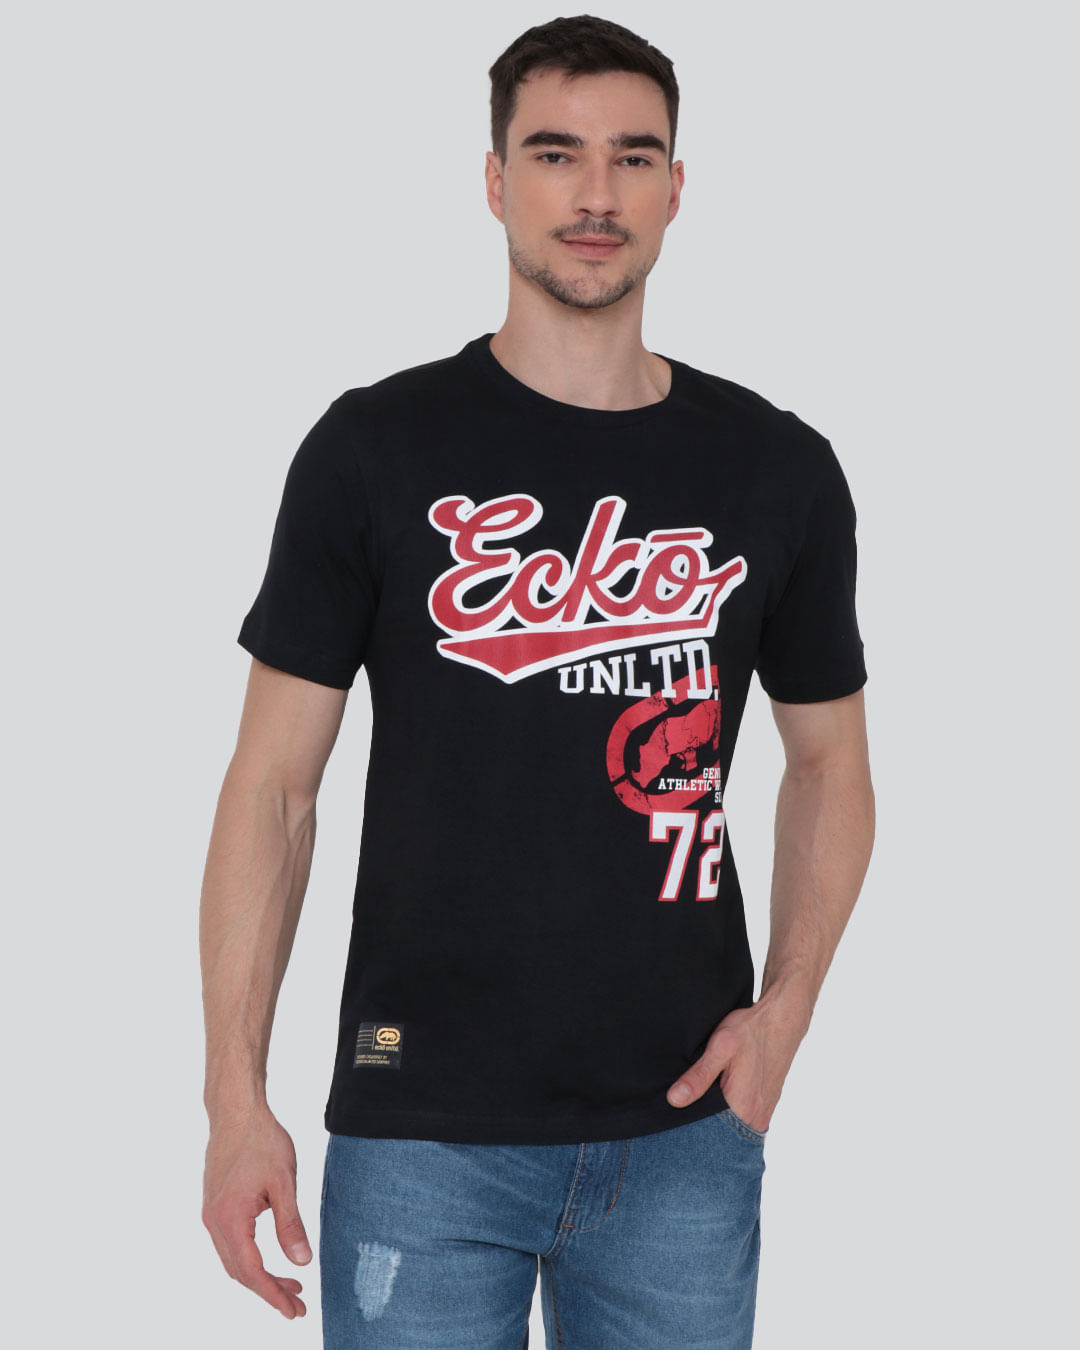 Camiseta-Masculina-Estampa-Ecko-Preta